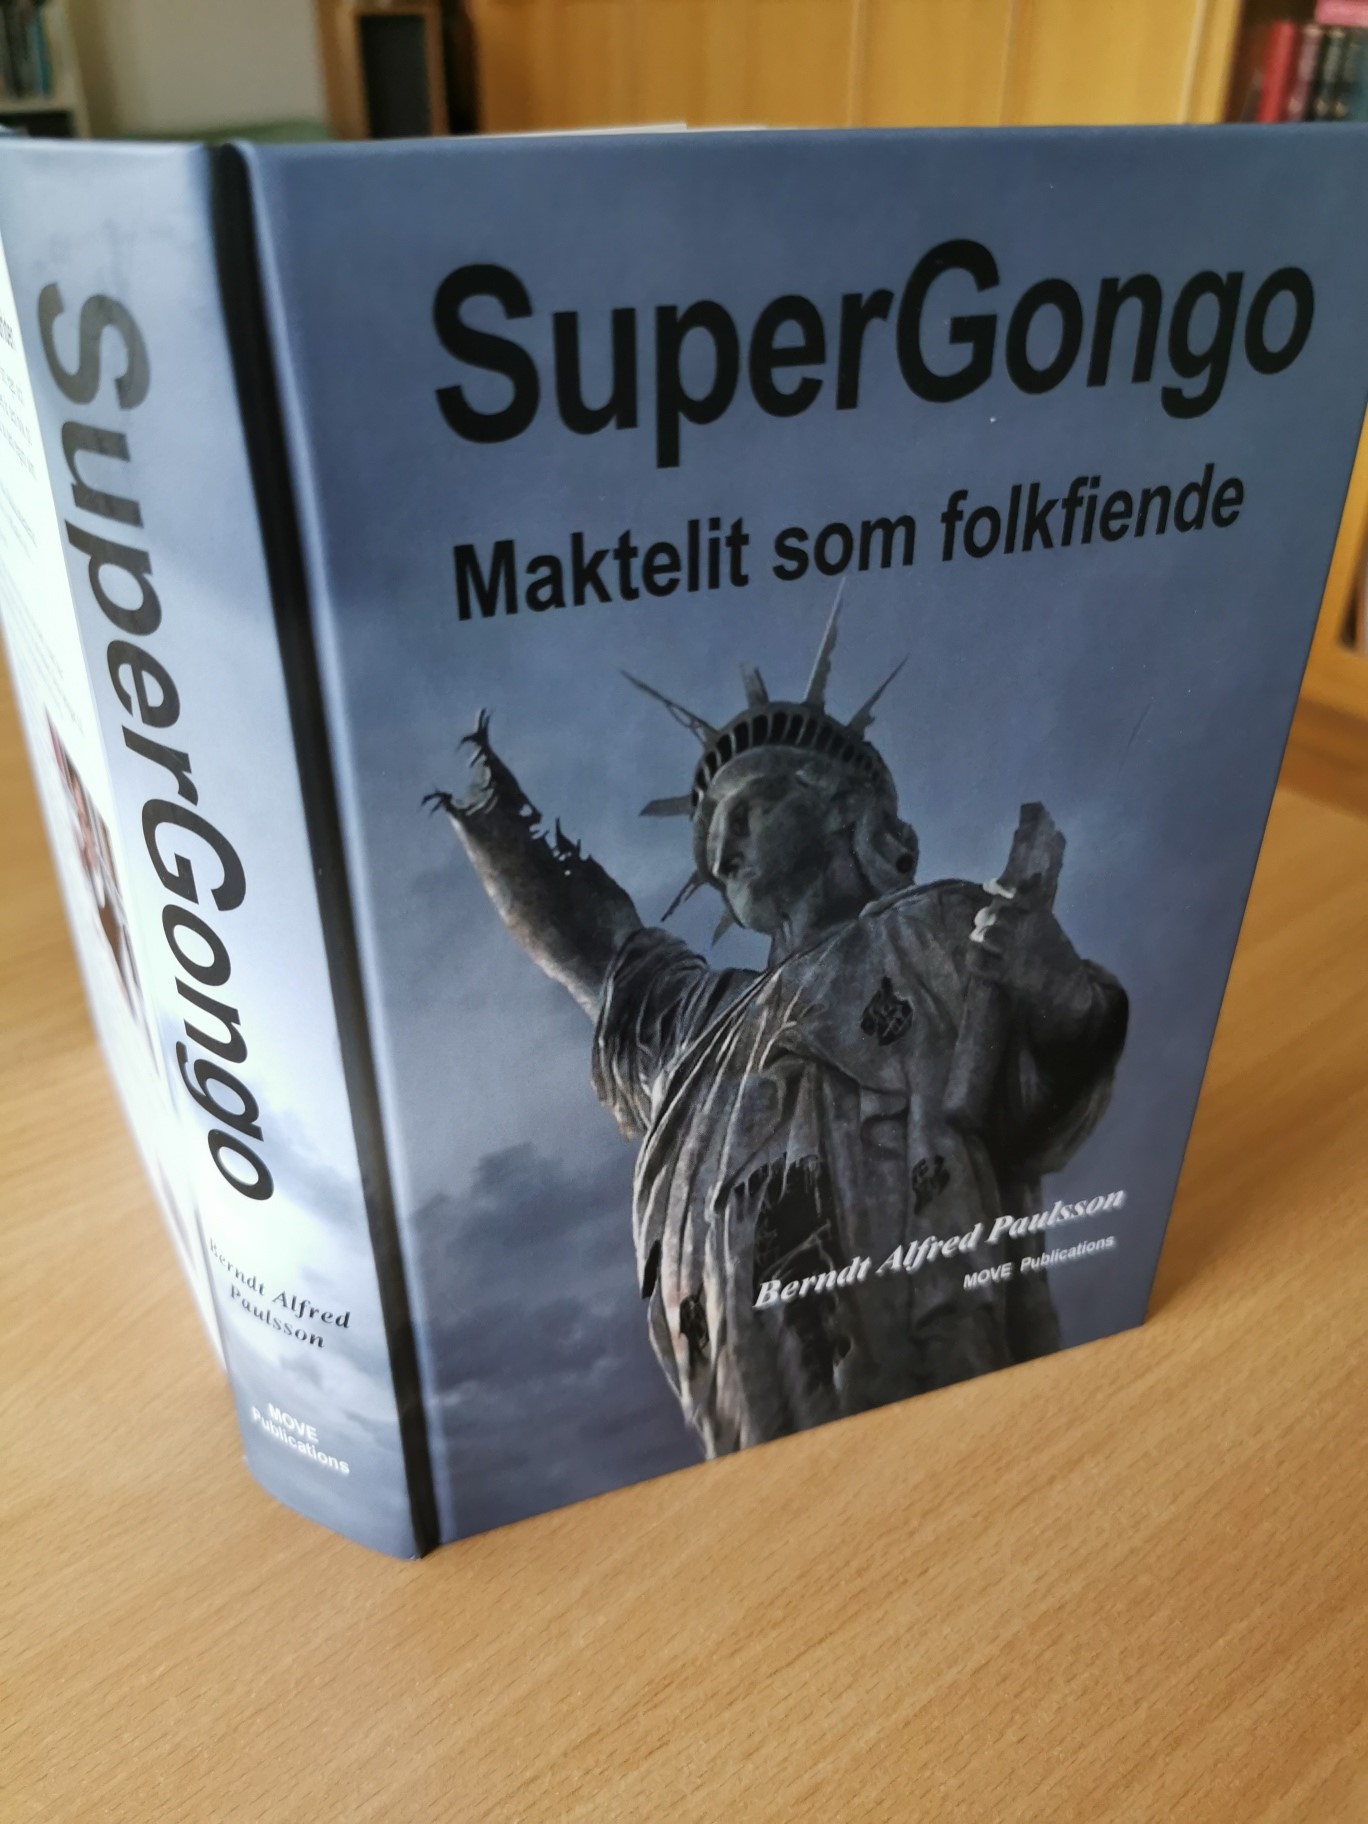 ”Supergongo” – Världen styrs av mäktiga banker, företag, militär kapacitet och kontroll av media